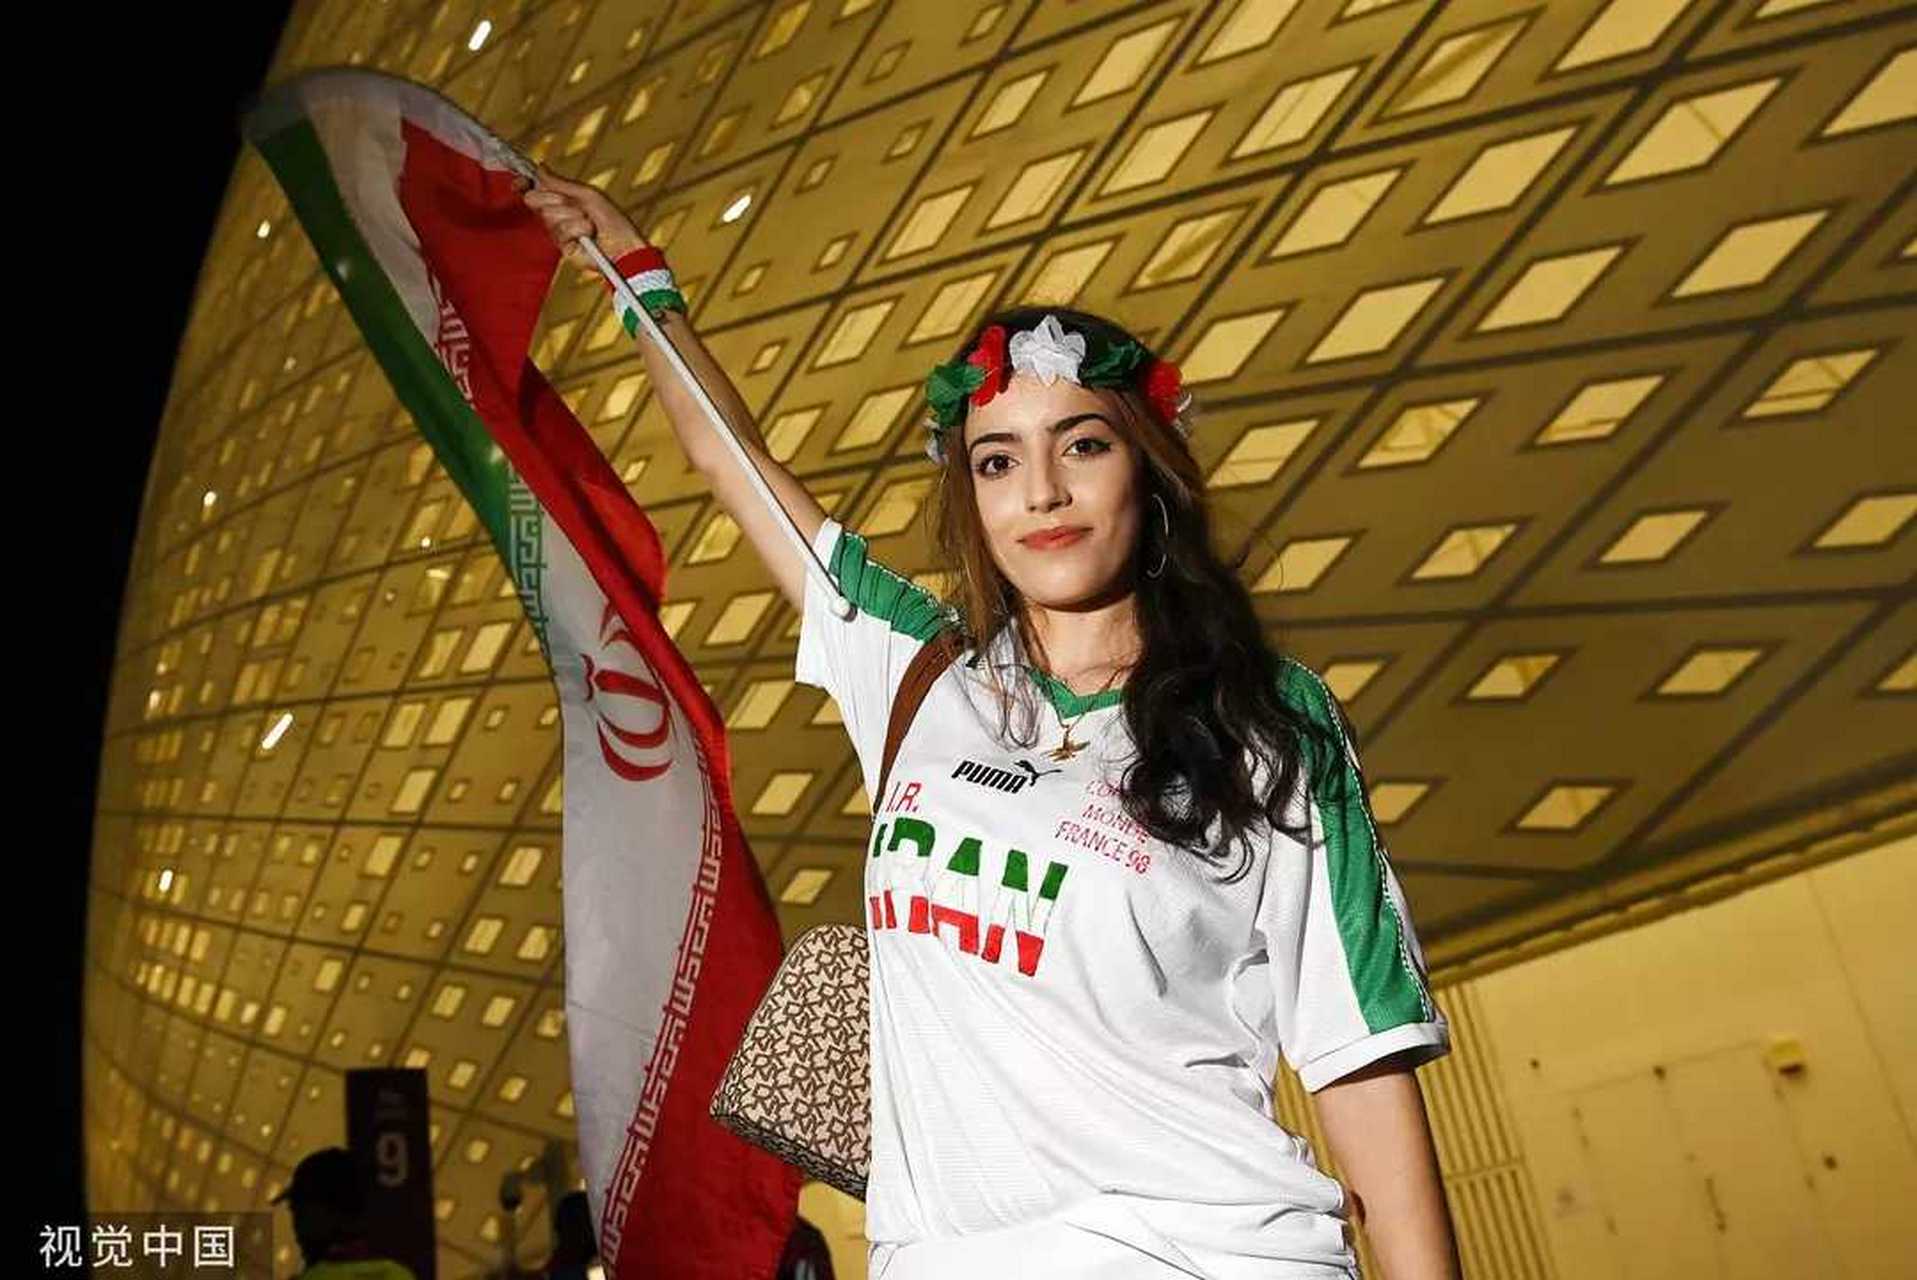 大量伊朗女球迷现身美伊大战 不戴头巾惊艳看台#体育 11月30日报道